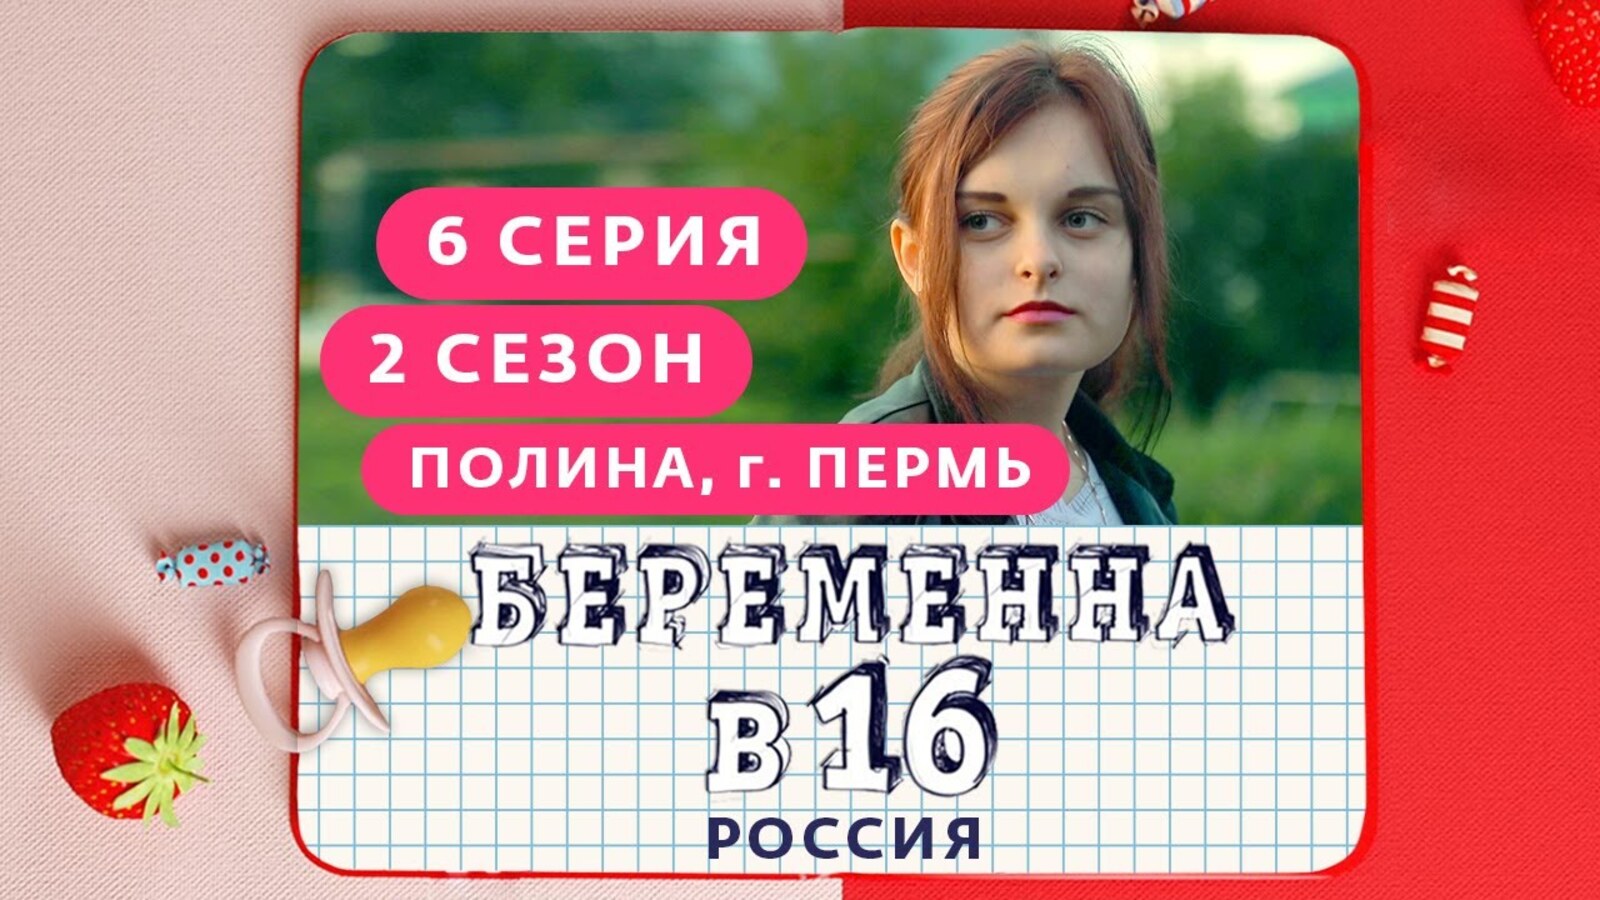 Российский шестнадцать. Беременна в 16 русская версия.